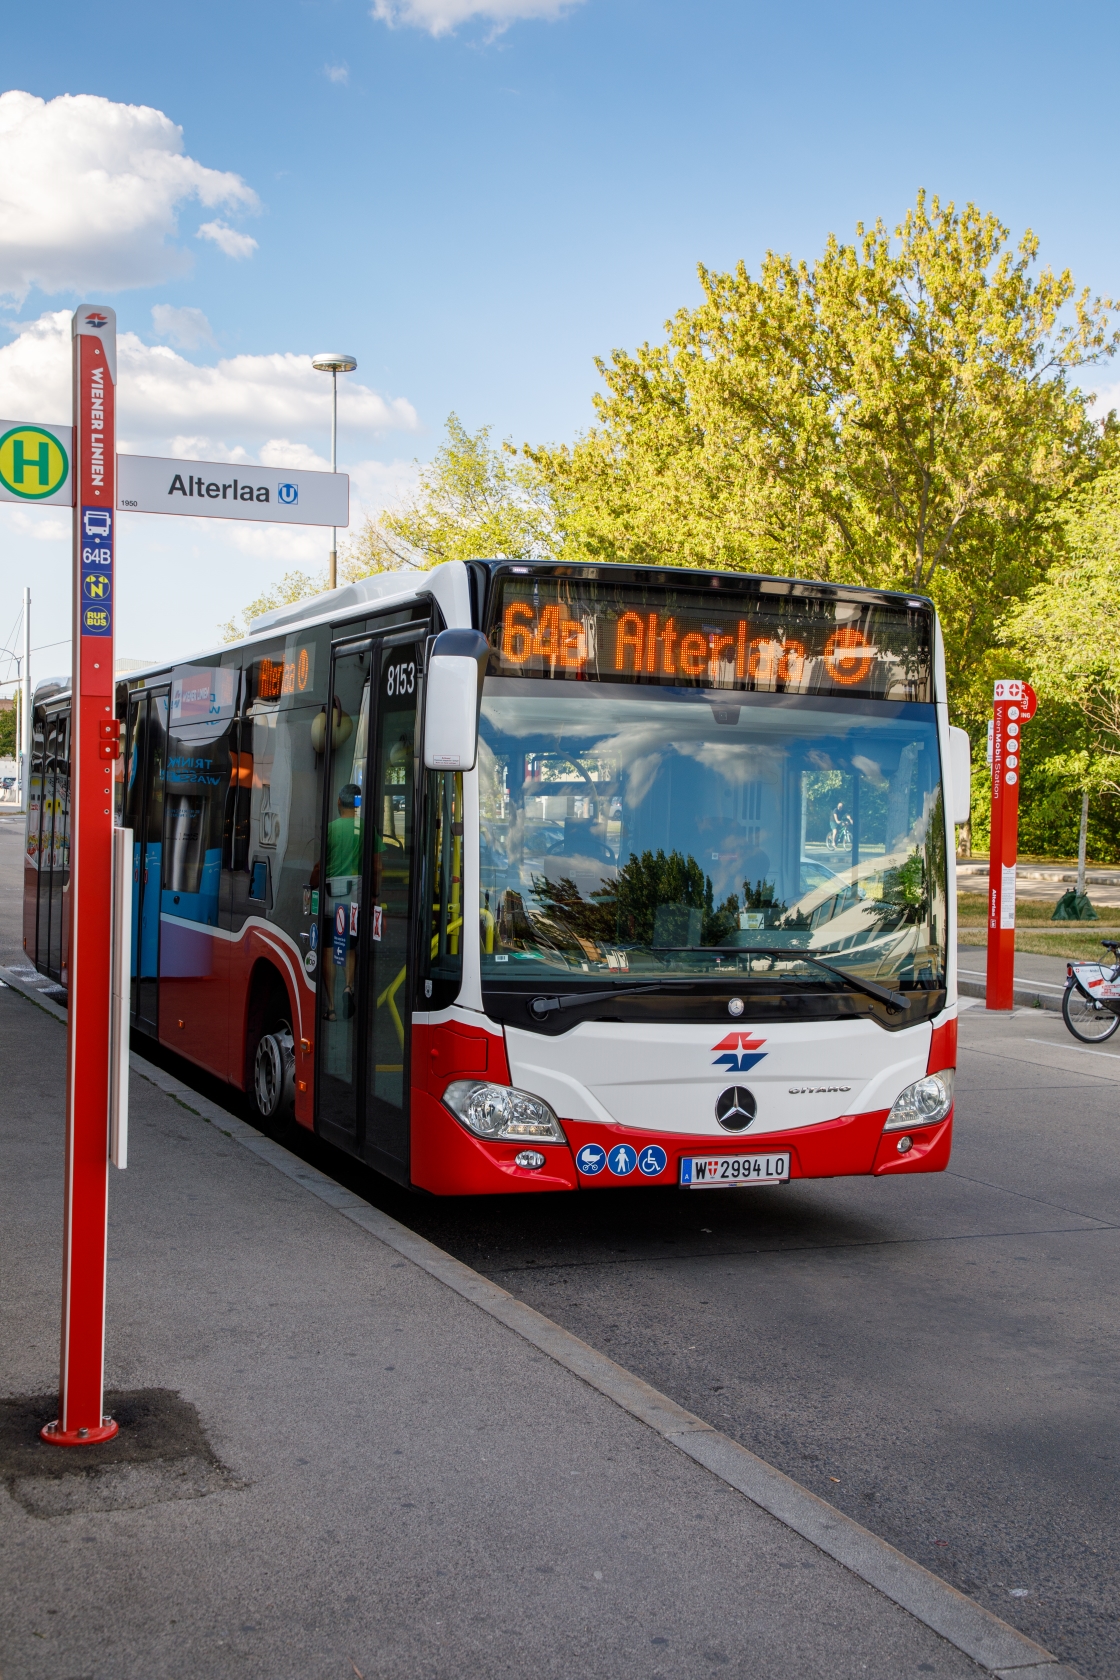 Liesing wächst und das Öffi-Netz wächst mit! Die Wiener Linien erweitern ihr Busnetz in Liesing, um die Fahrgäste noch besser an U-, S- und Badner Bahn anzuschließen. Dafür werden zwei Buslinien neu geschaffen - 61B und 64B - und zwei bestehende Linien neu organisiert - 61A und 64A. 